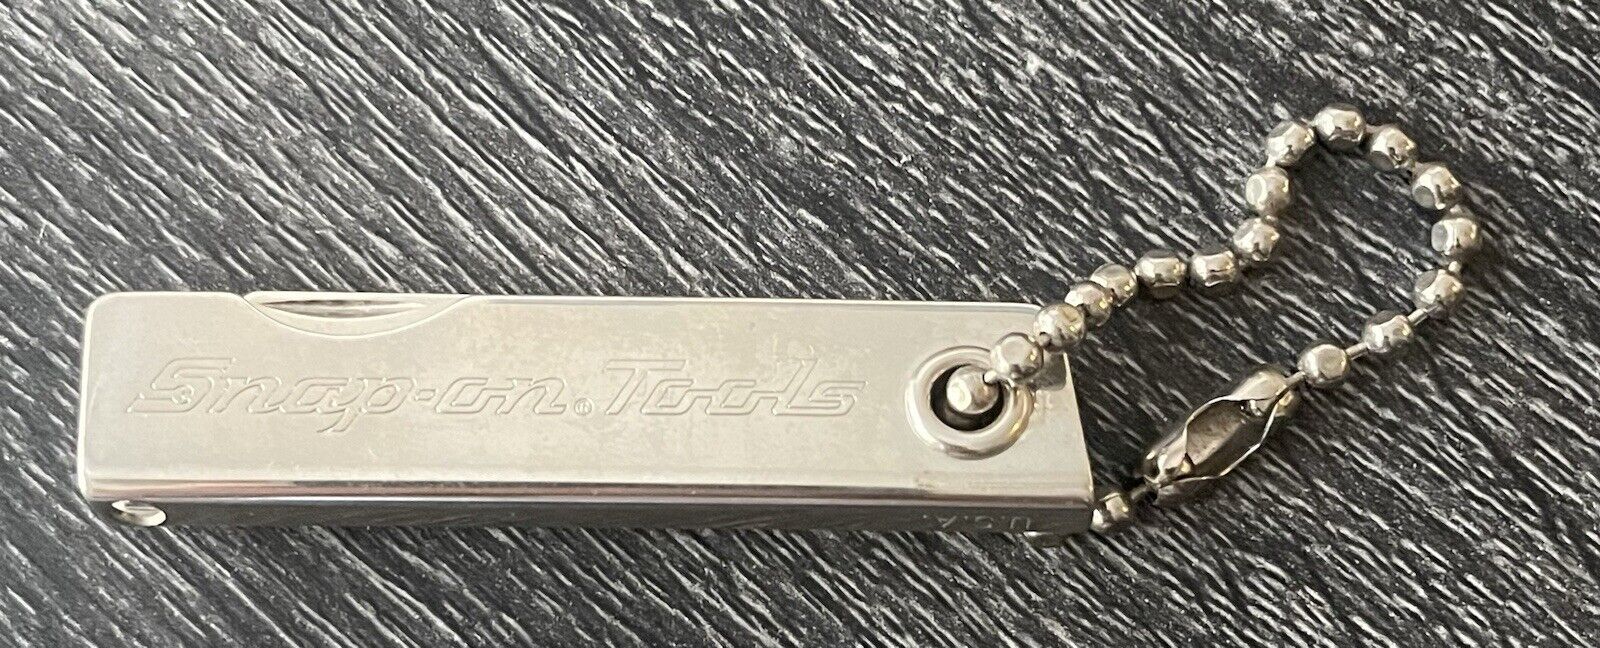 Vintage Snap-on Tools Promotional Keychain Pocket Knife Multi Tool USA